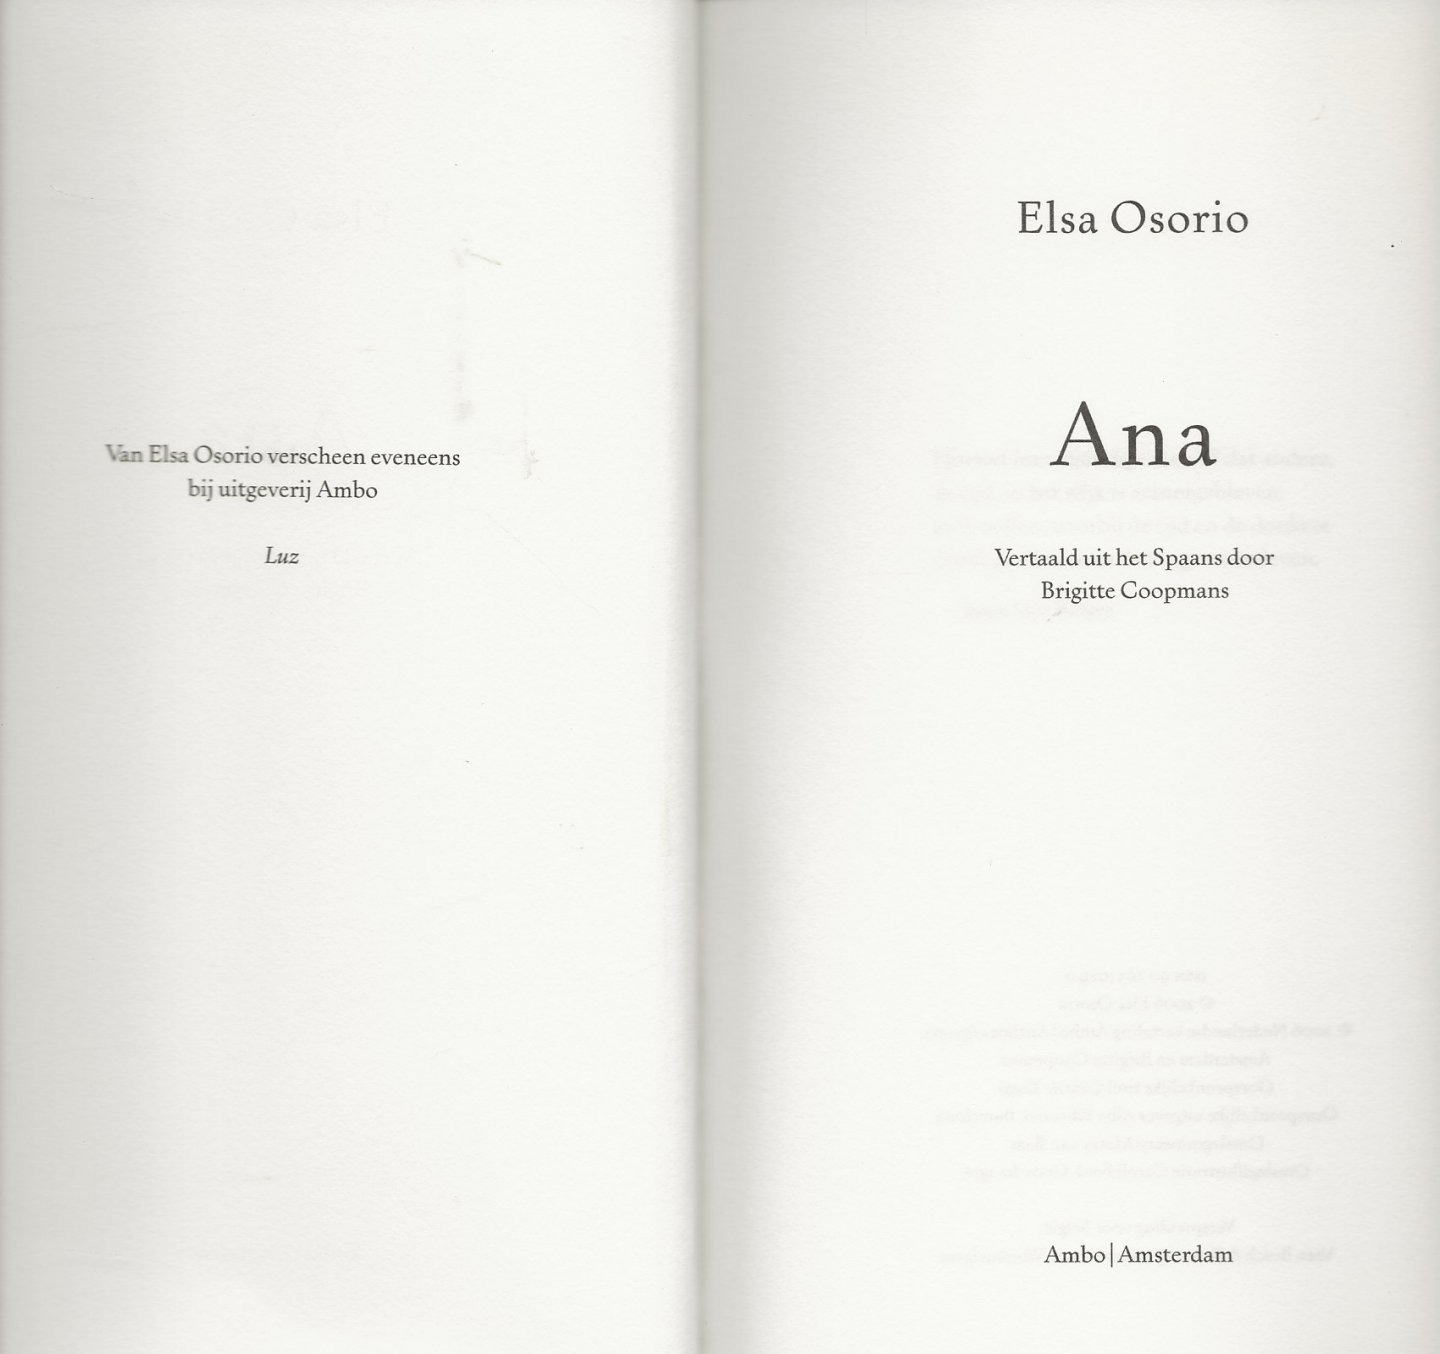 Osorio, Elsa . Vertaald uit het Spaans door Brigitte Coopmans  Omslagillustratie Caroll Ford  Getty Images - Ana